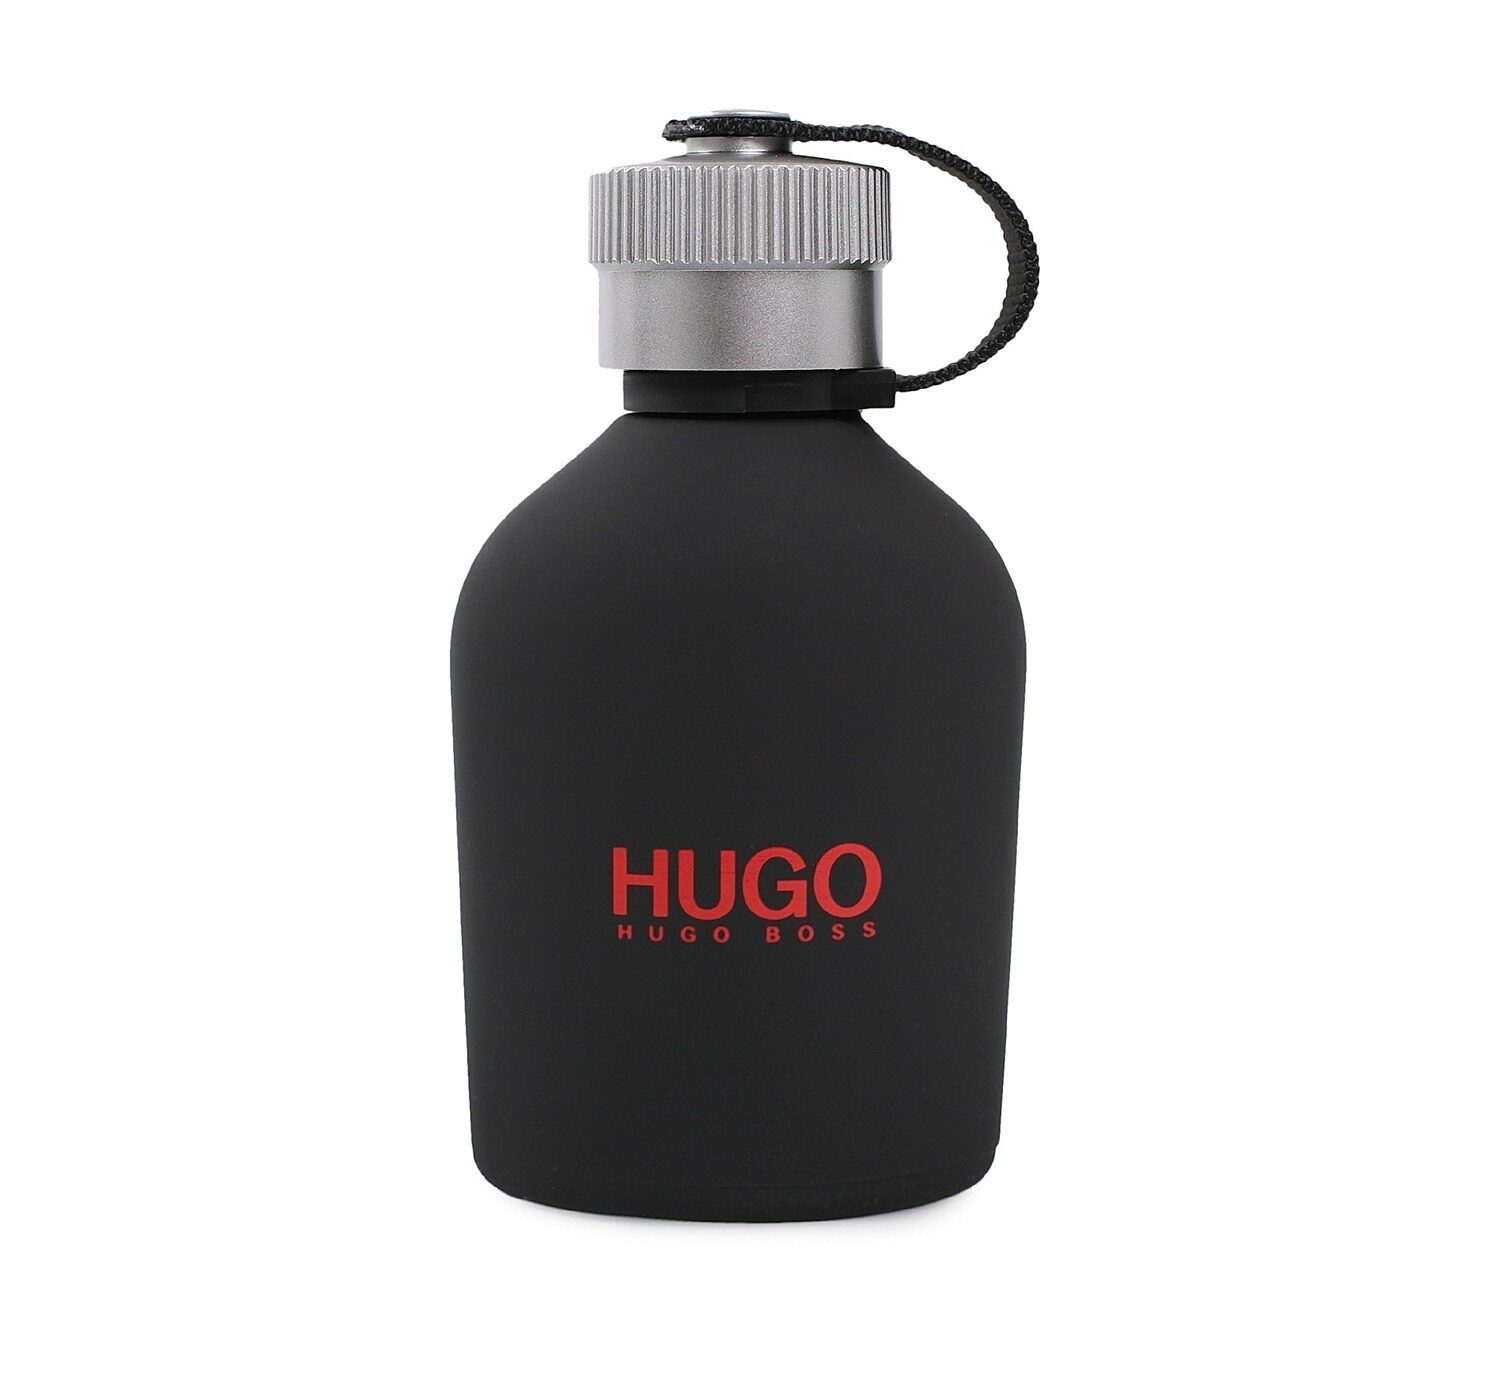 Хуго босс черный. Hugo Boss just different 125 мл. Hugo Boss Hugo just different 125мл. (Тестер). Hugo just different m EDT 125 ml [m]. Hugo Boss / туалетная вода just different, 75 мл.